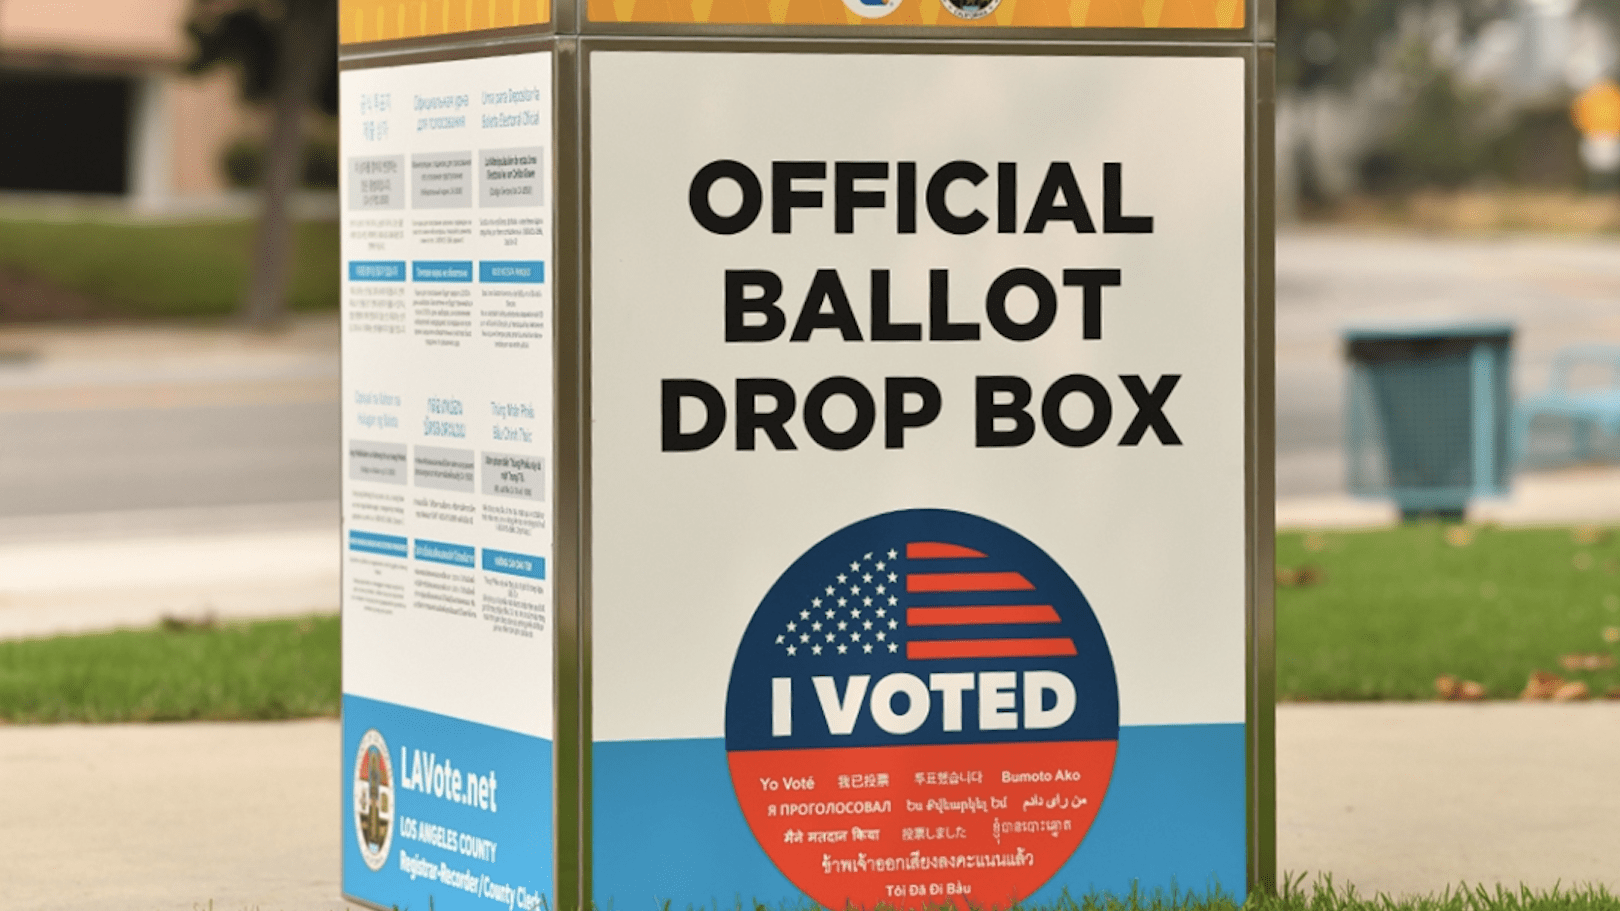 首先，出现发放重复选票的情况是计算机系统的失误，河滨县选民登记处已经更正解决该错误。并且，因为选票使用独特的条形码，一旦一个人投票，第二张选票将自动作废。其次，当地地检官已于2021年在河滨县追查上千宗指控，但只发现一起在2016年的故意重复投票。公共诚信部门并未在河滨县发现广泛的选民欺诈。最后，关于多米尼克投票系统公司的多项主张已被选举相关委员会、司法部和国土安全部、多米尼克公司出面驳斥虚假主张：毫无根据，相关指控毫无根据，并不可信。